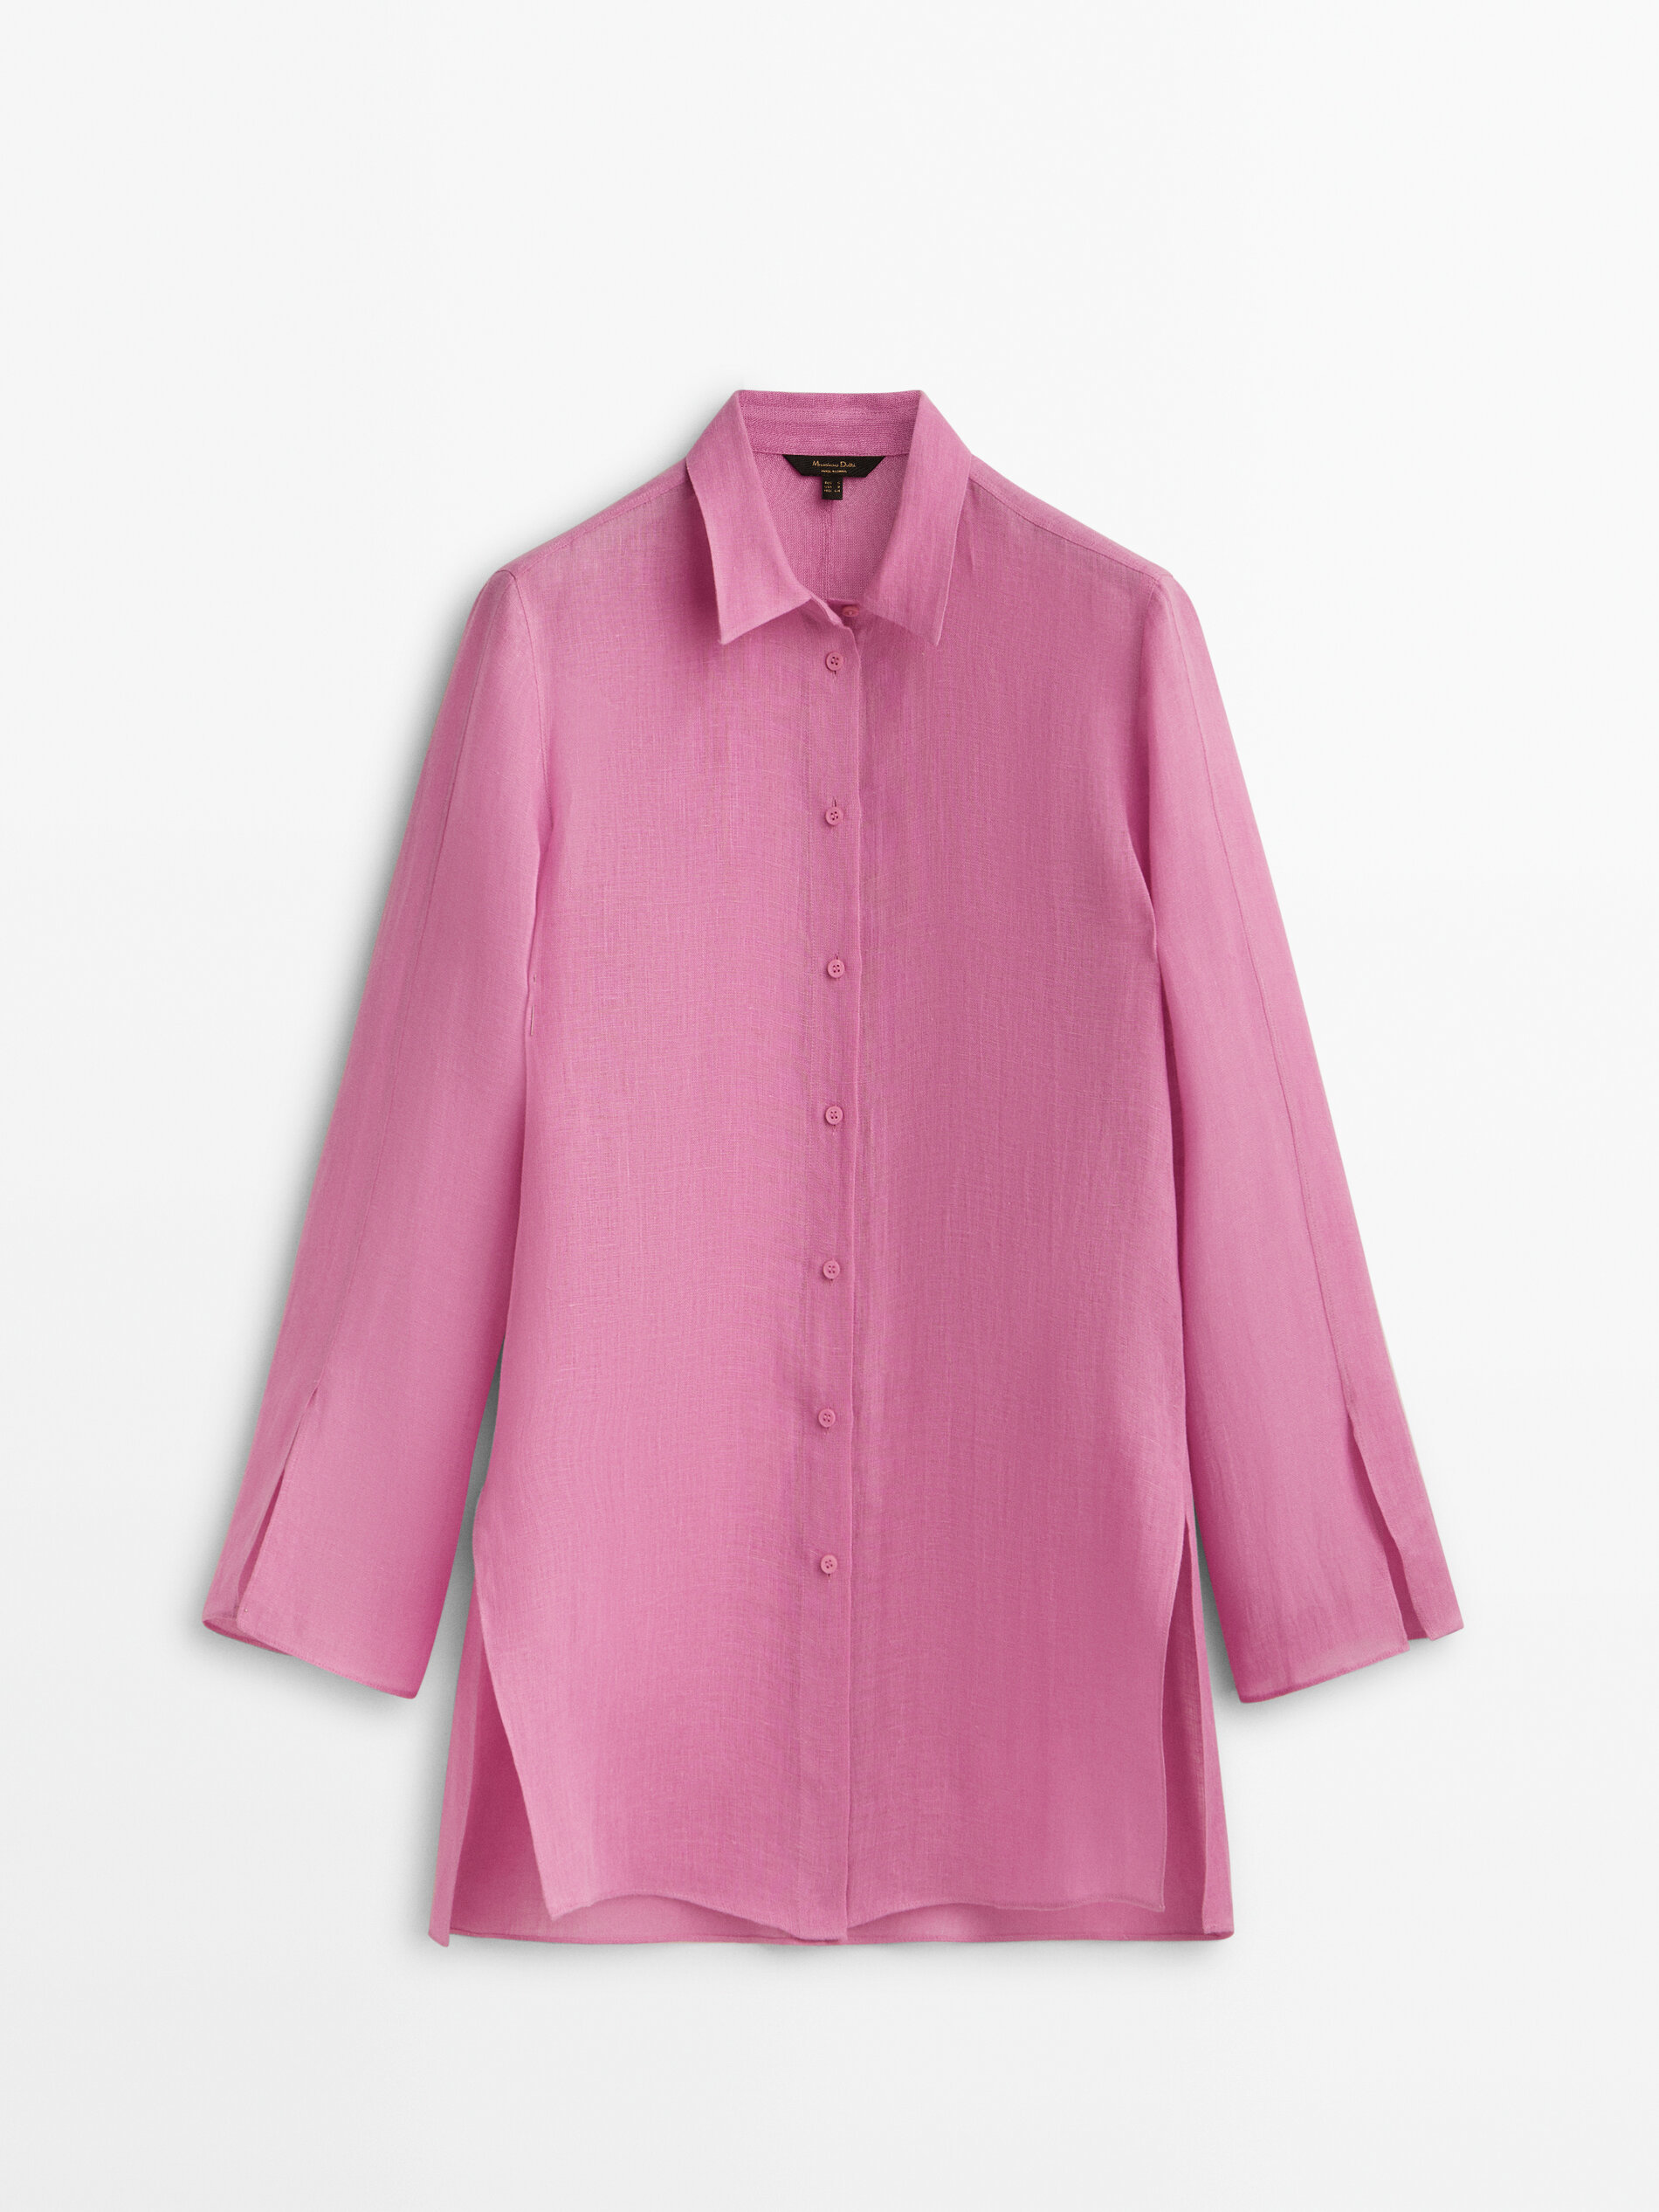 Camisa rosa de lino de Massimo Dutti (39,95 euros).